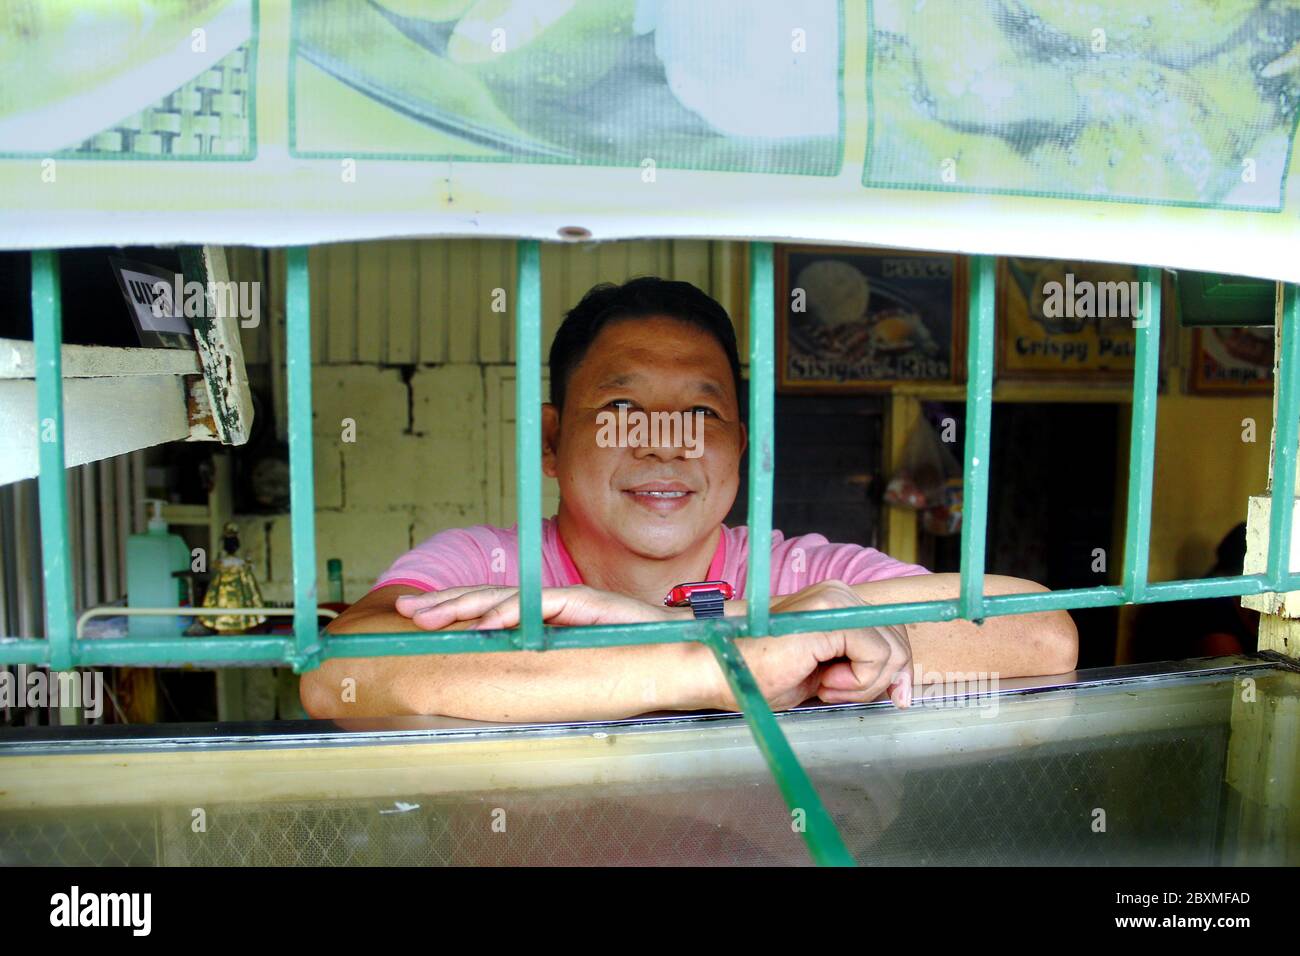 Antipolo City, Philippines - 1 juin 2020 : portrait d'un philippin adulte debout dans son magasin vendant des collations frites. Banque D'Images